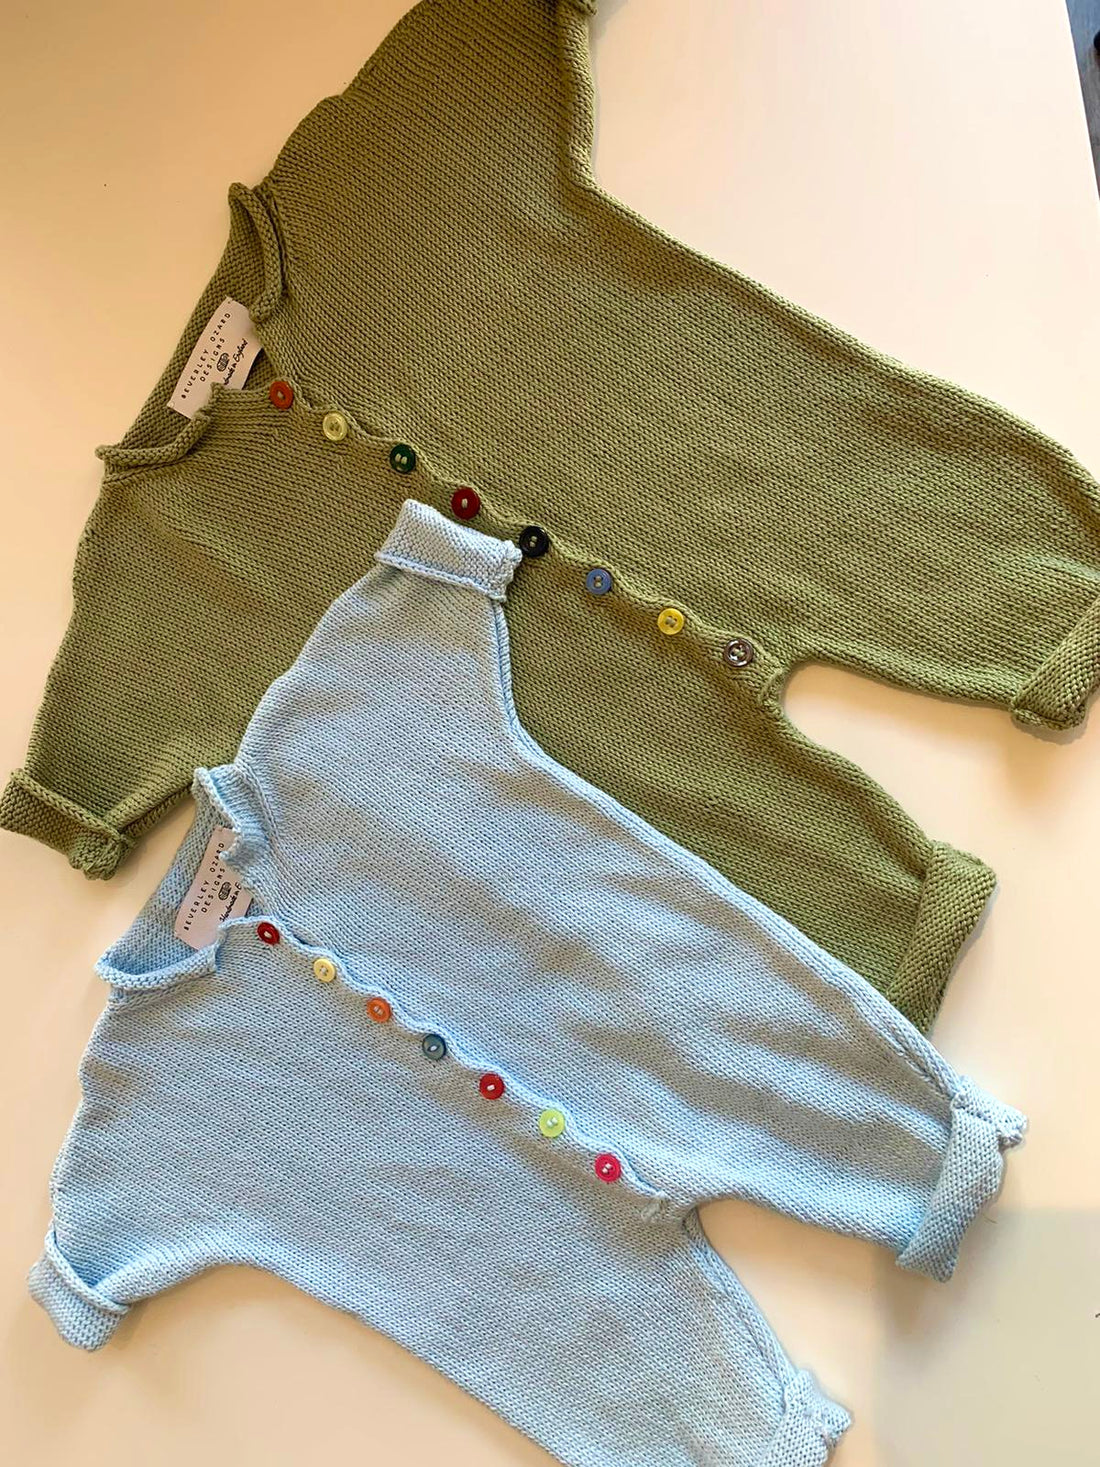 Babygrow Knitting Pattern (download)